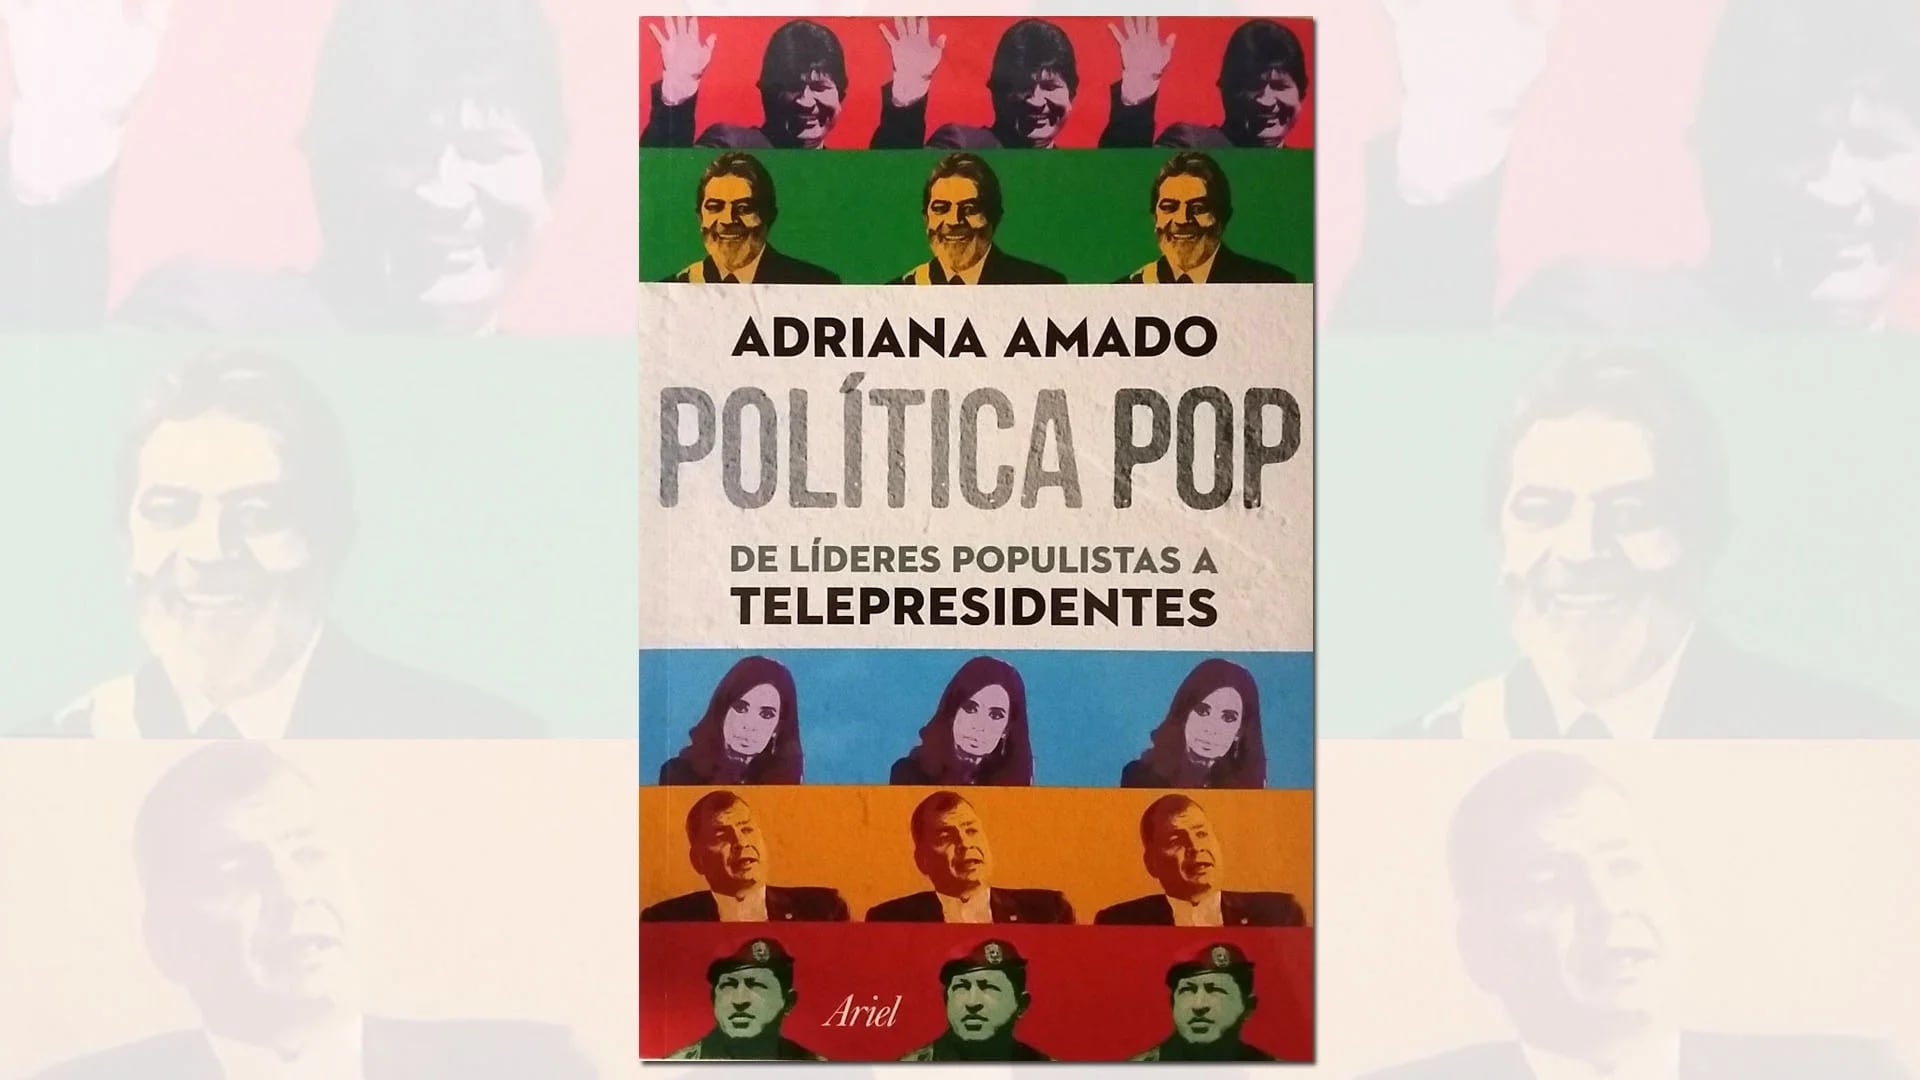 Portada del nuevo libro de Adriana Amado “Política pop” (Ariel, 2016)